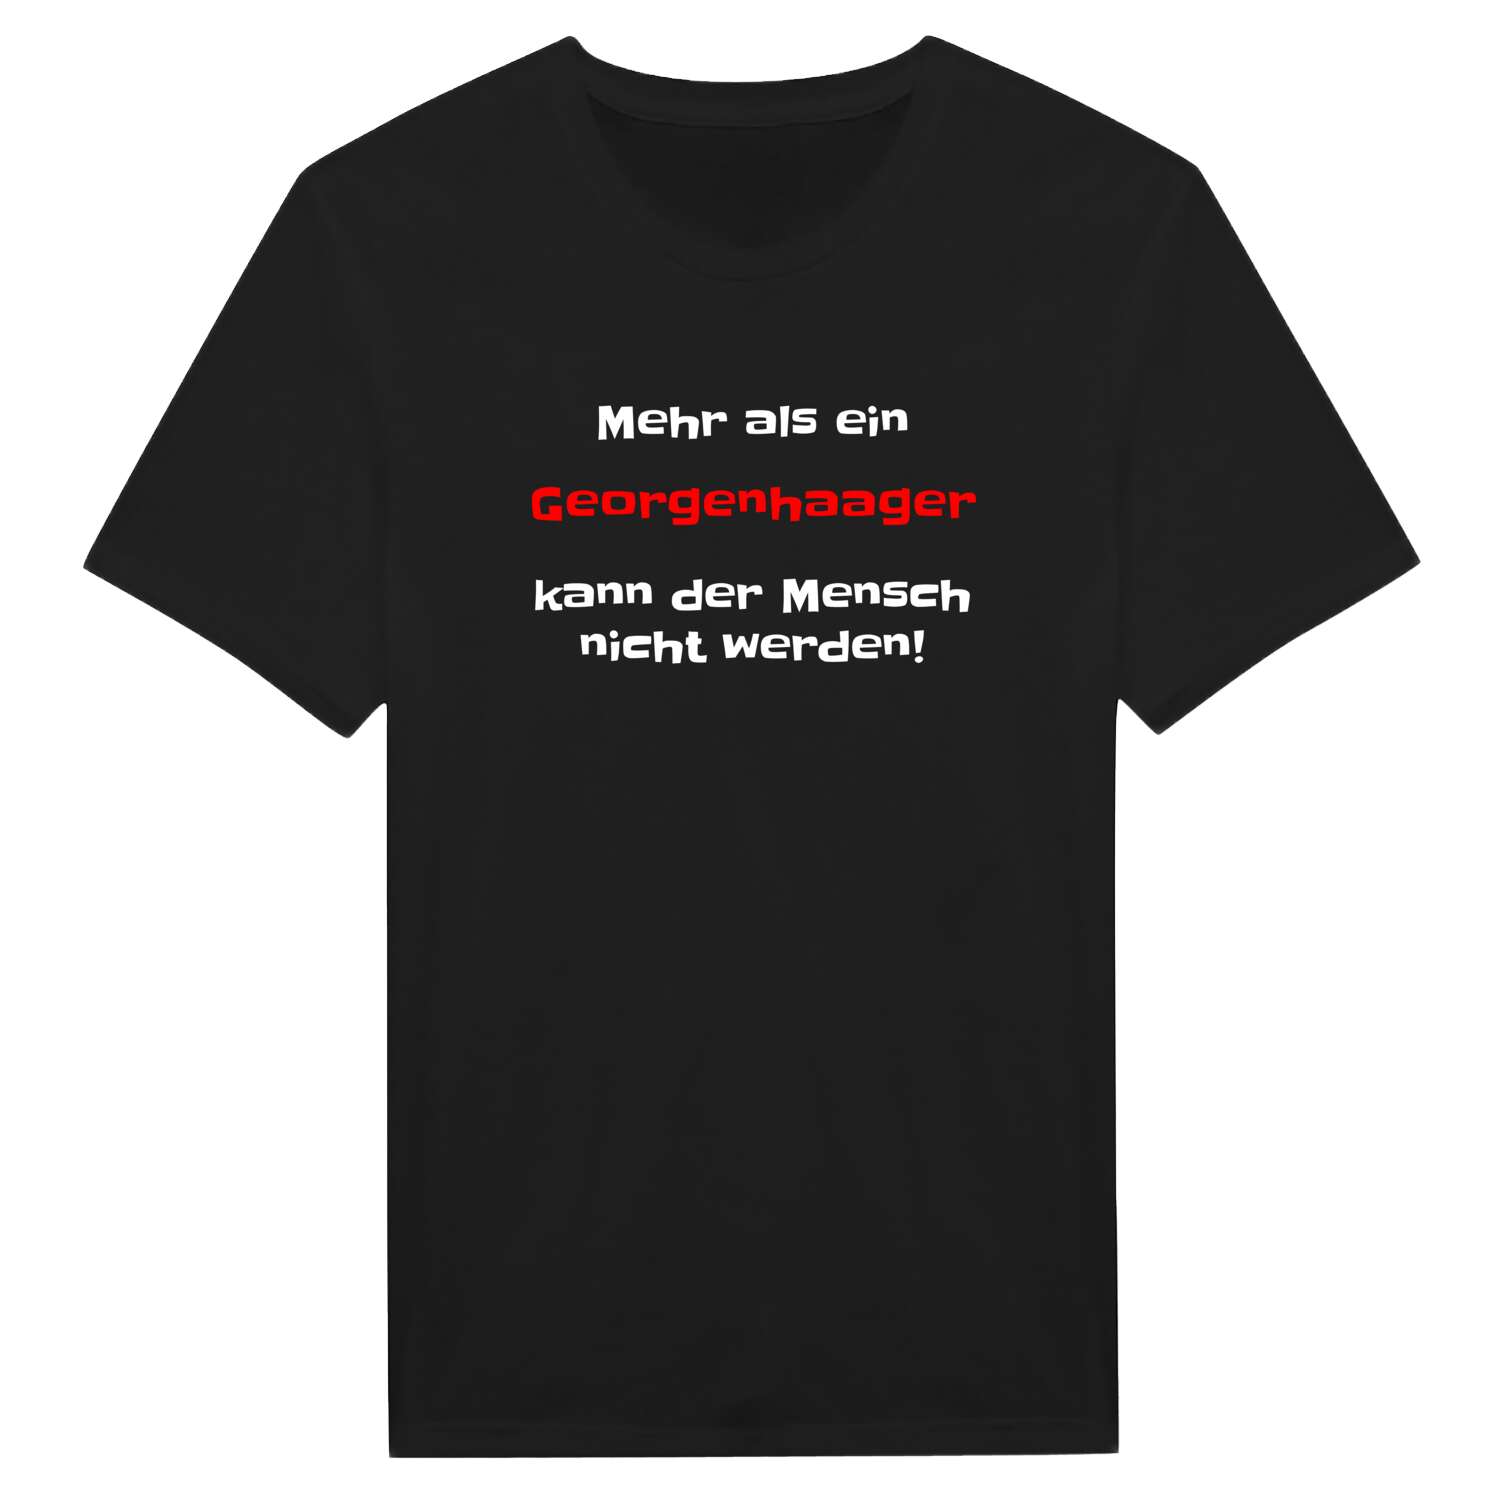 Georgenhaag T-Shirt »Mehr als ein«